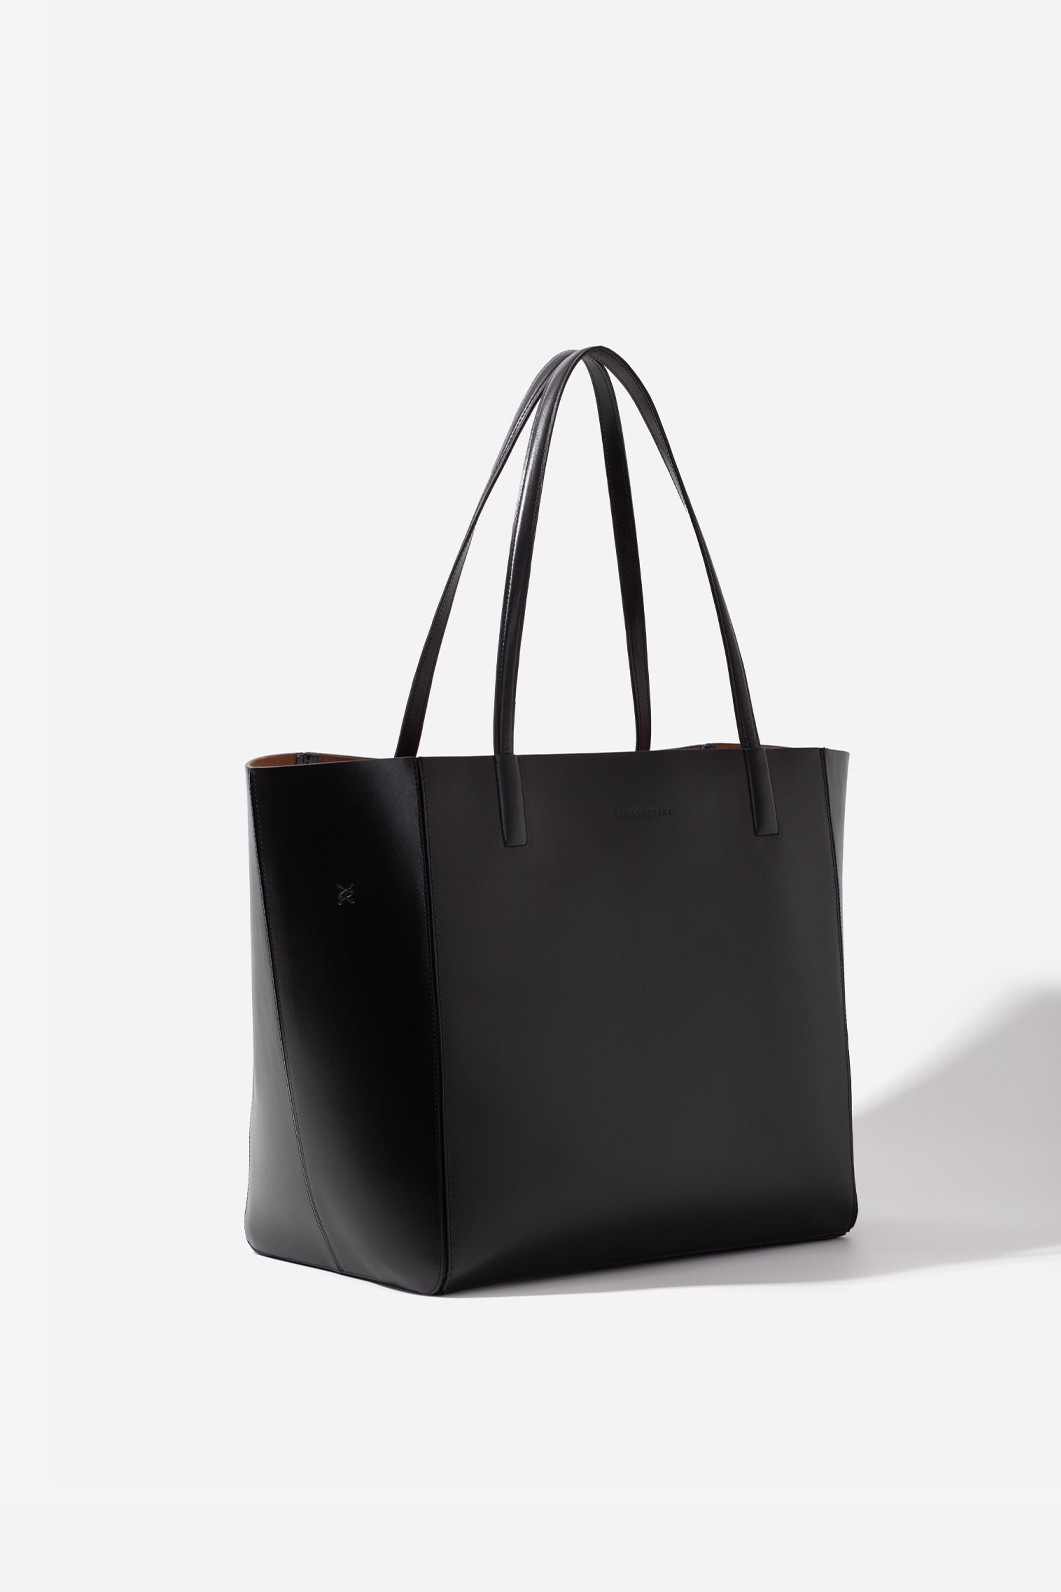 Sarah black leather shopper bag /gold/